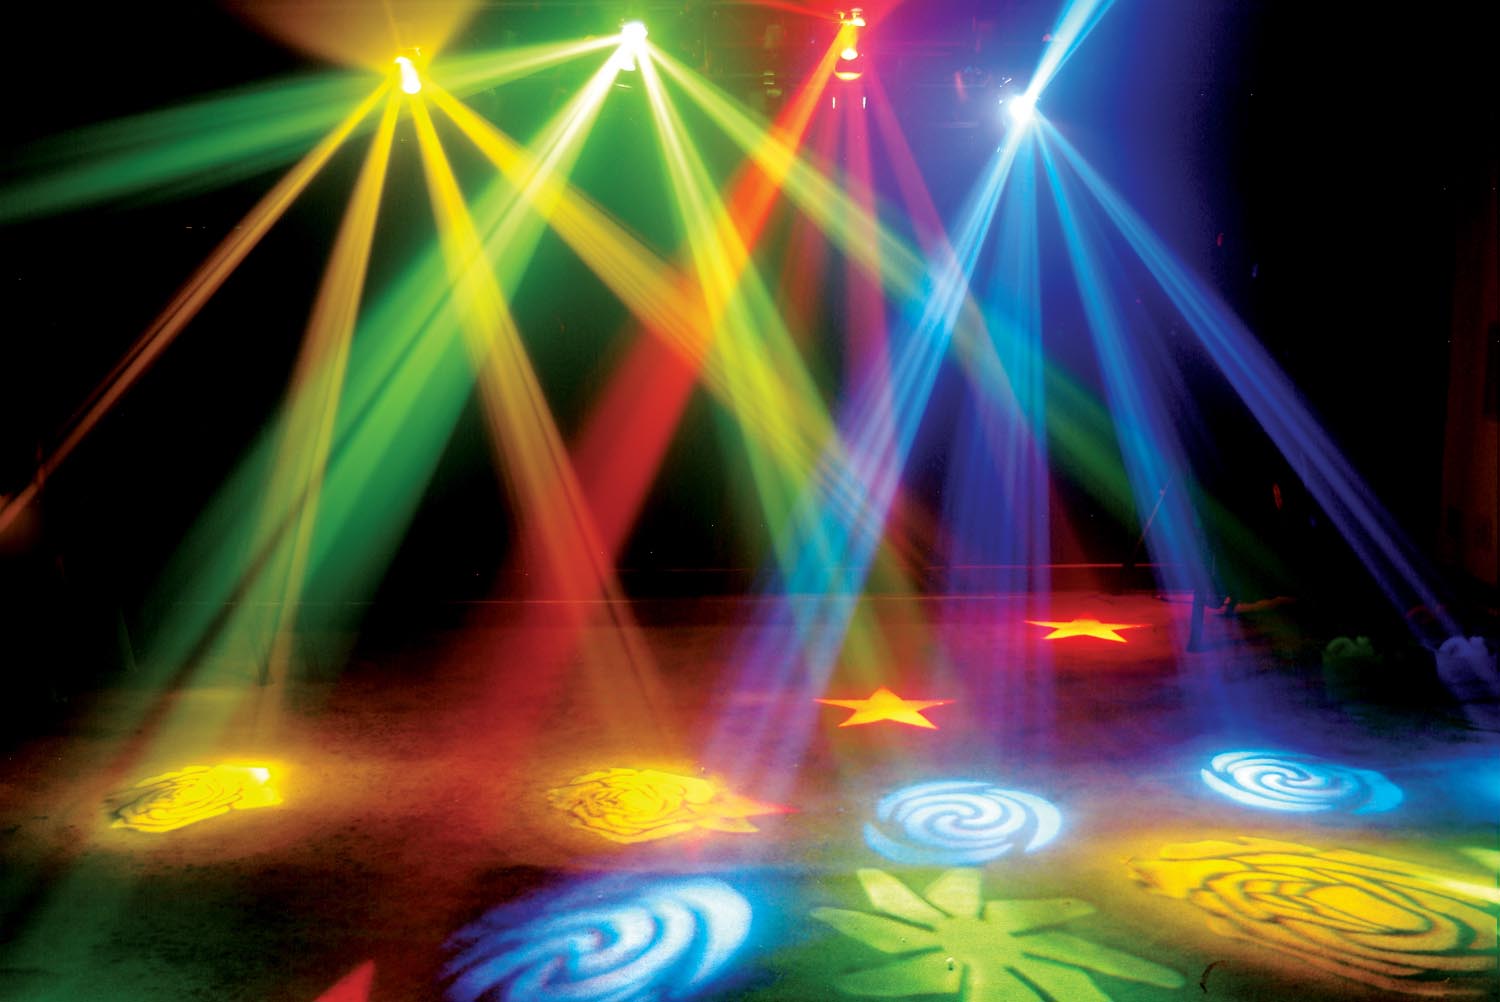 DJ Lights Wallpapers - Top Free DJ Lights Backgrounds - WallpaperAccess